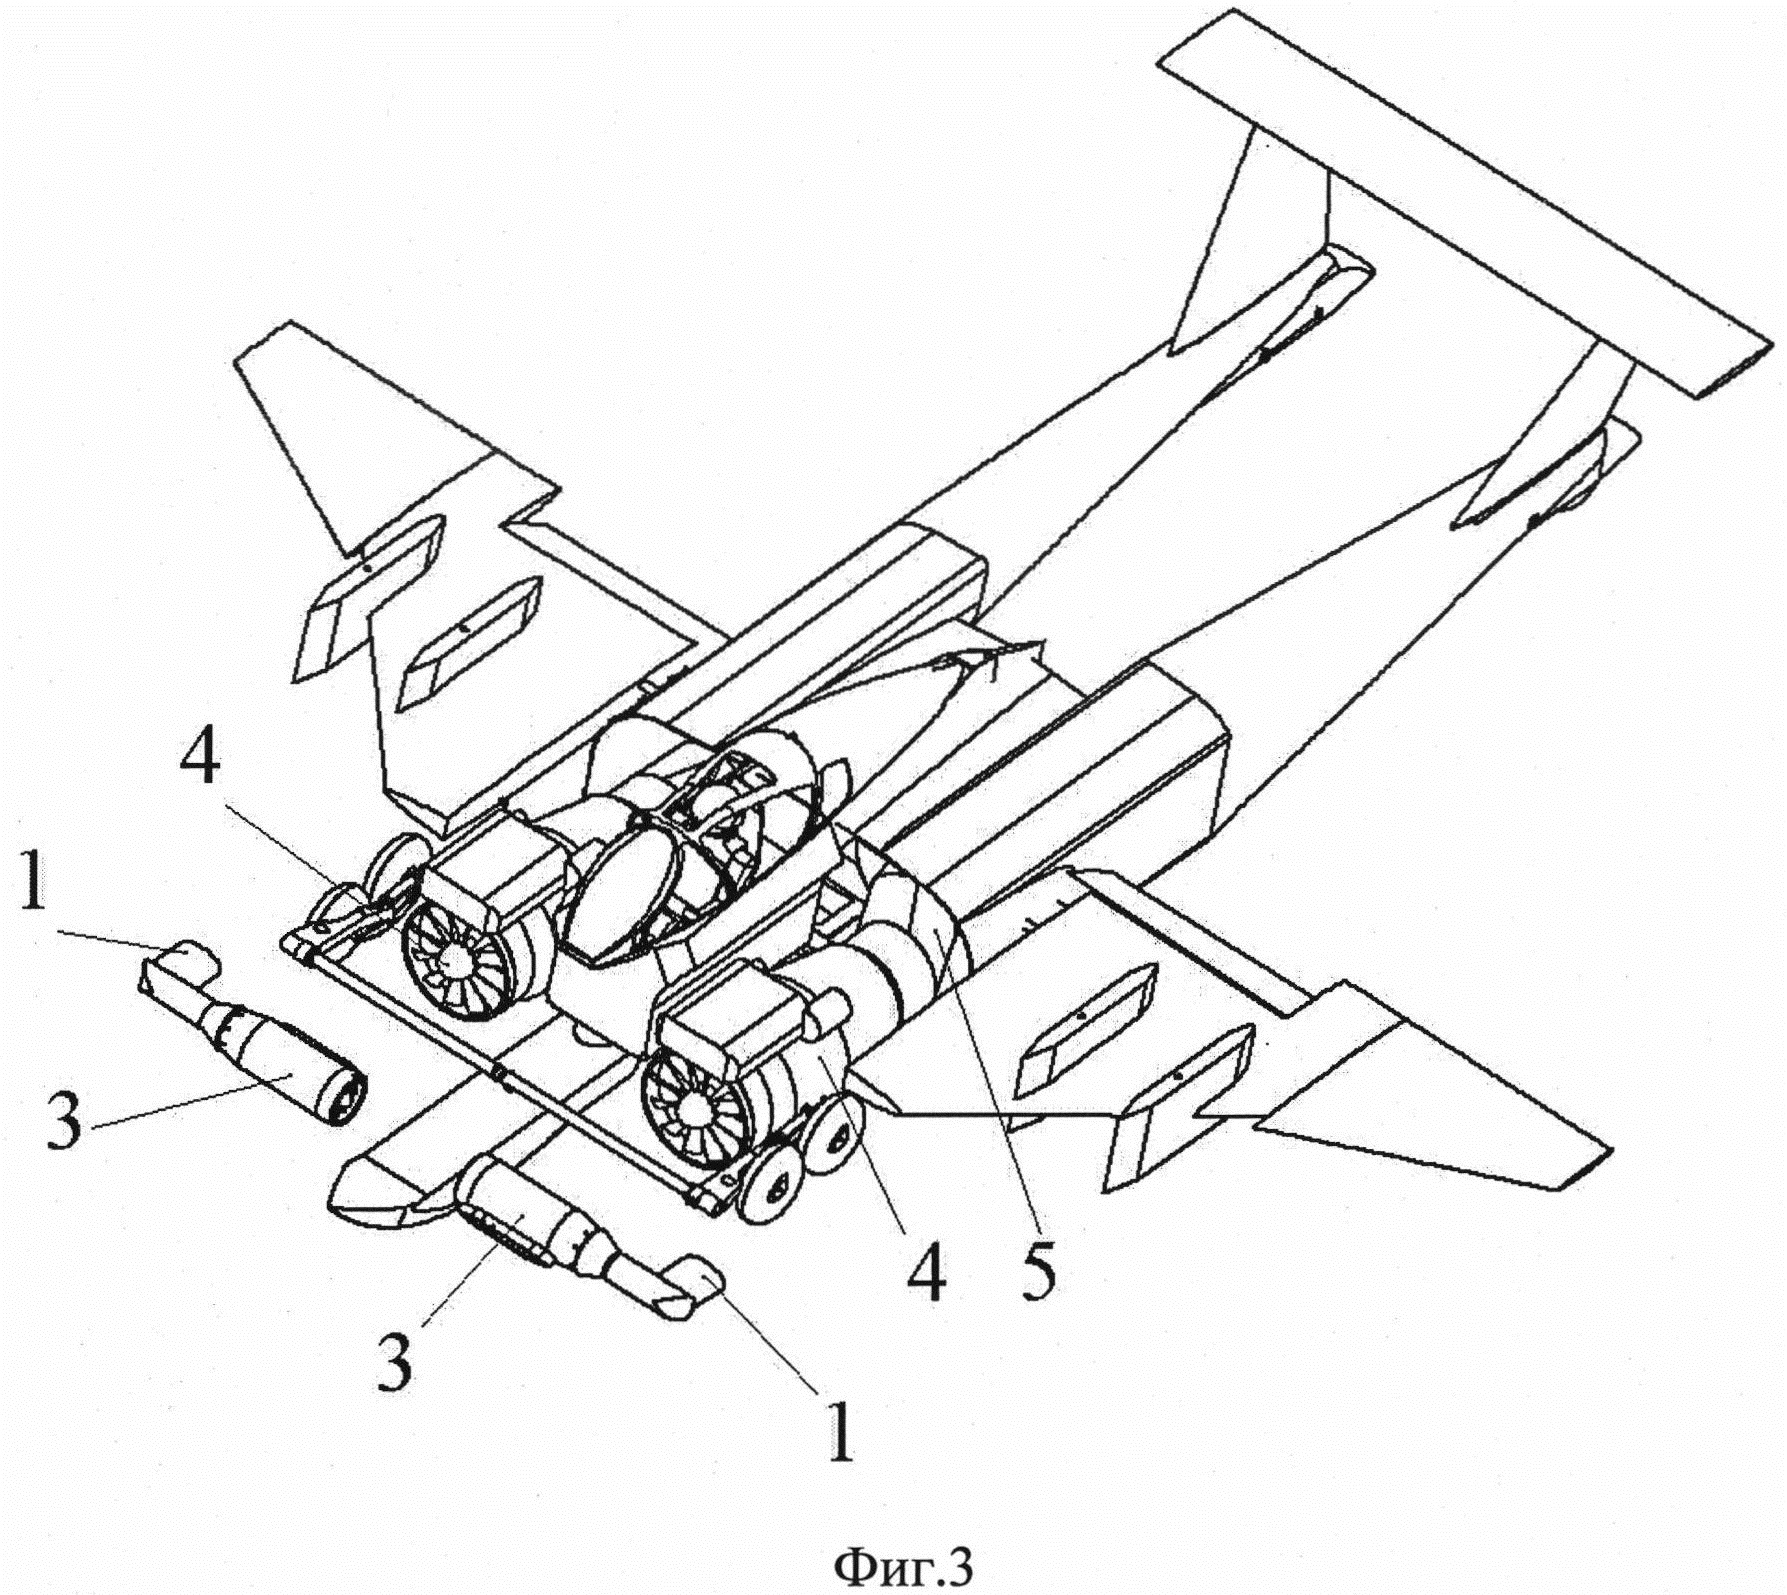 Самолет вертикального взлета и посадки (СВВП)